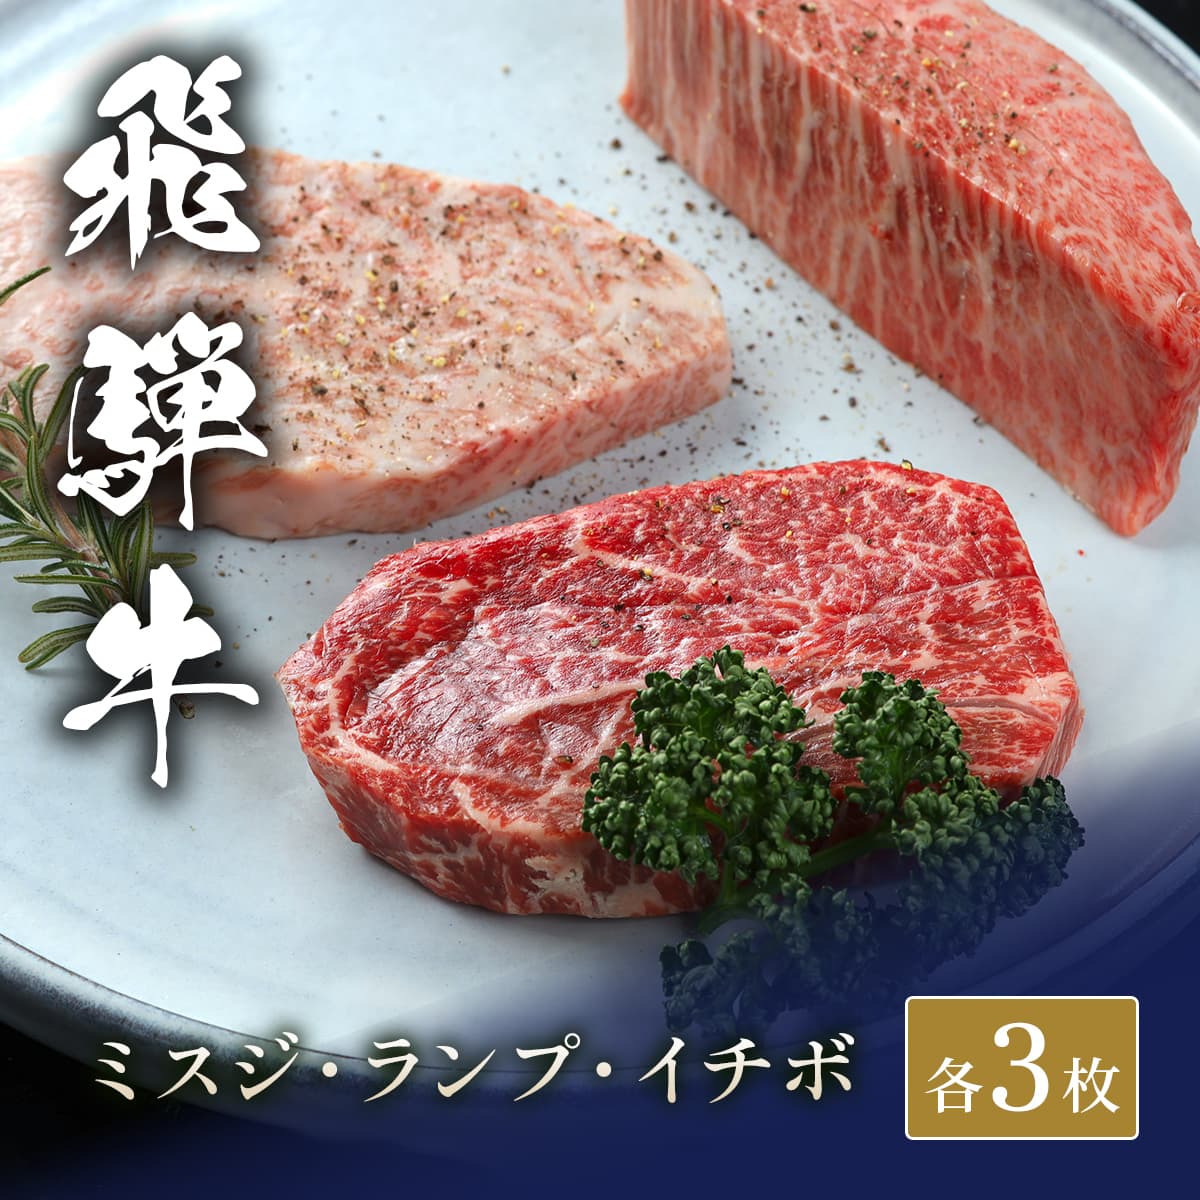 飛騨牛 ステーキ3種食べ比べ イチボ&ランプ&ミスジ x 各3枚